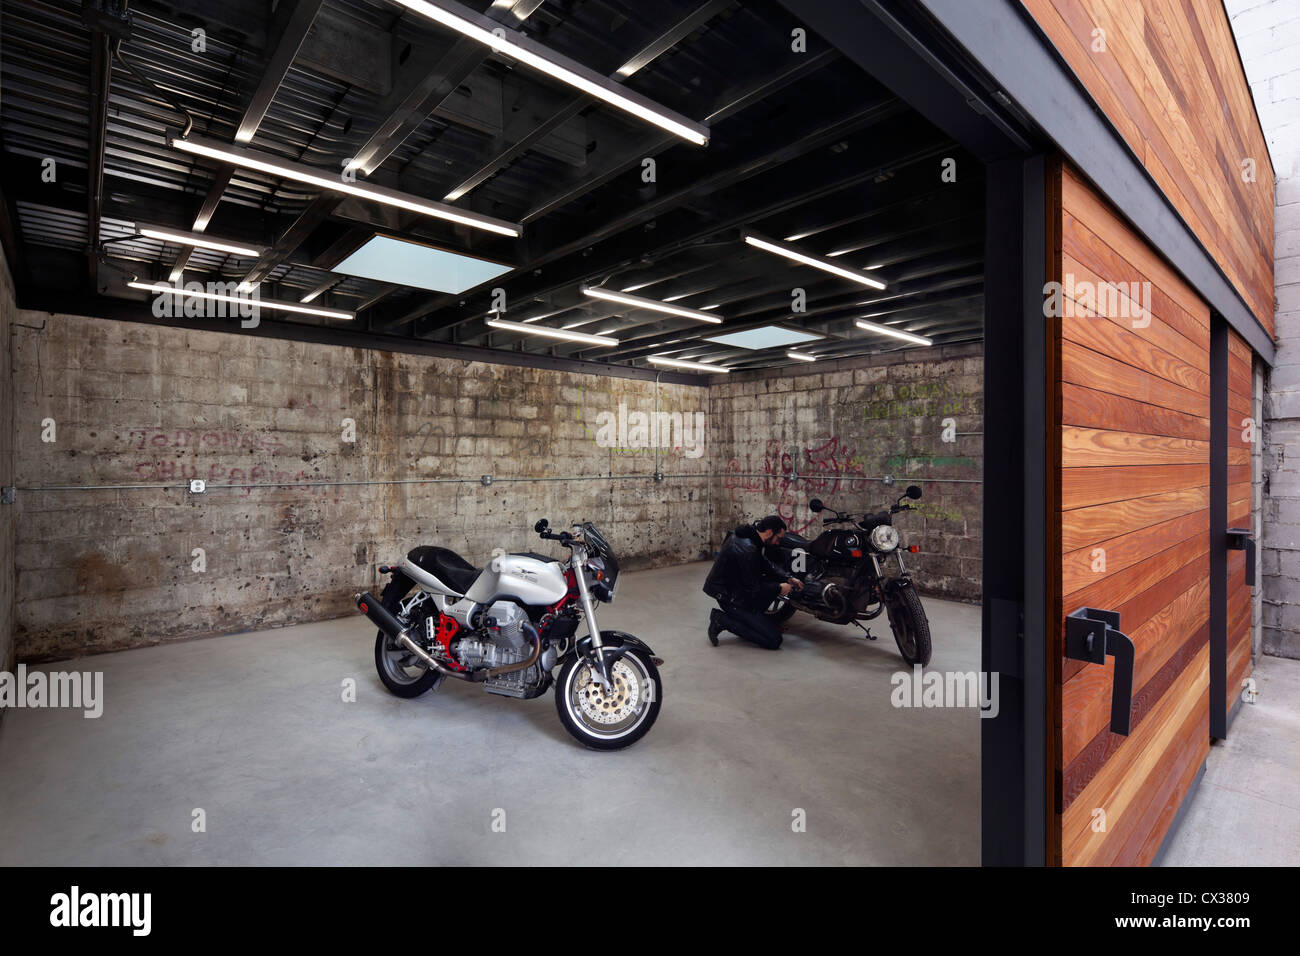 Bushwick Motorrad Garage und Garten, Brooklyn, USA. Architekt: Dameron  Architektur, 2012. Motorrad Sammler gar Stockfotografie - Alamy